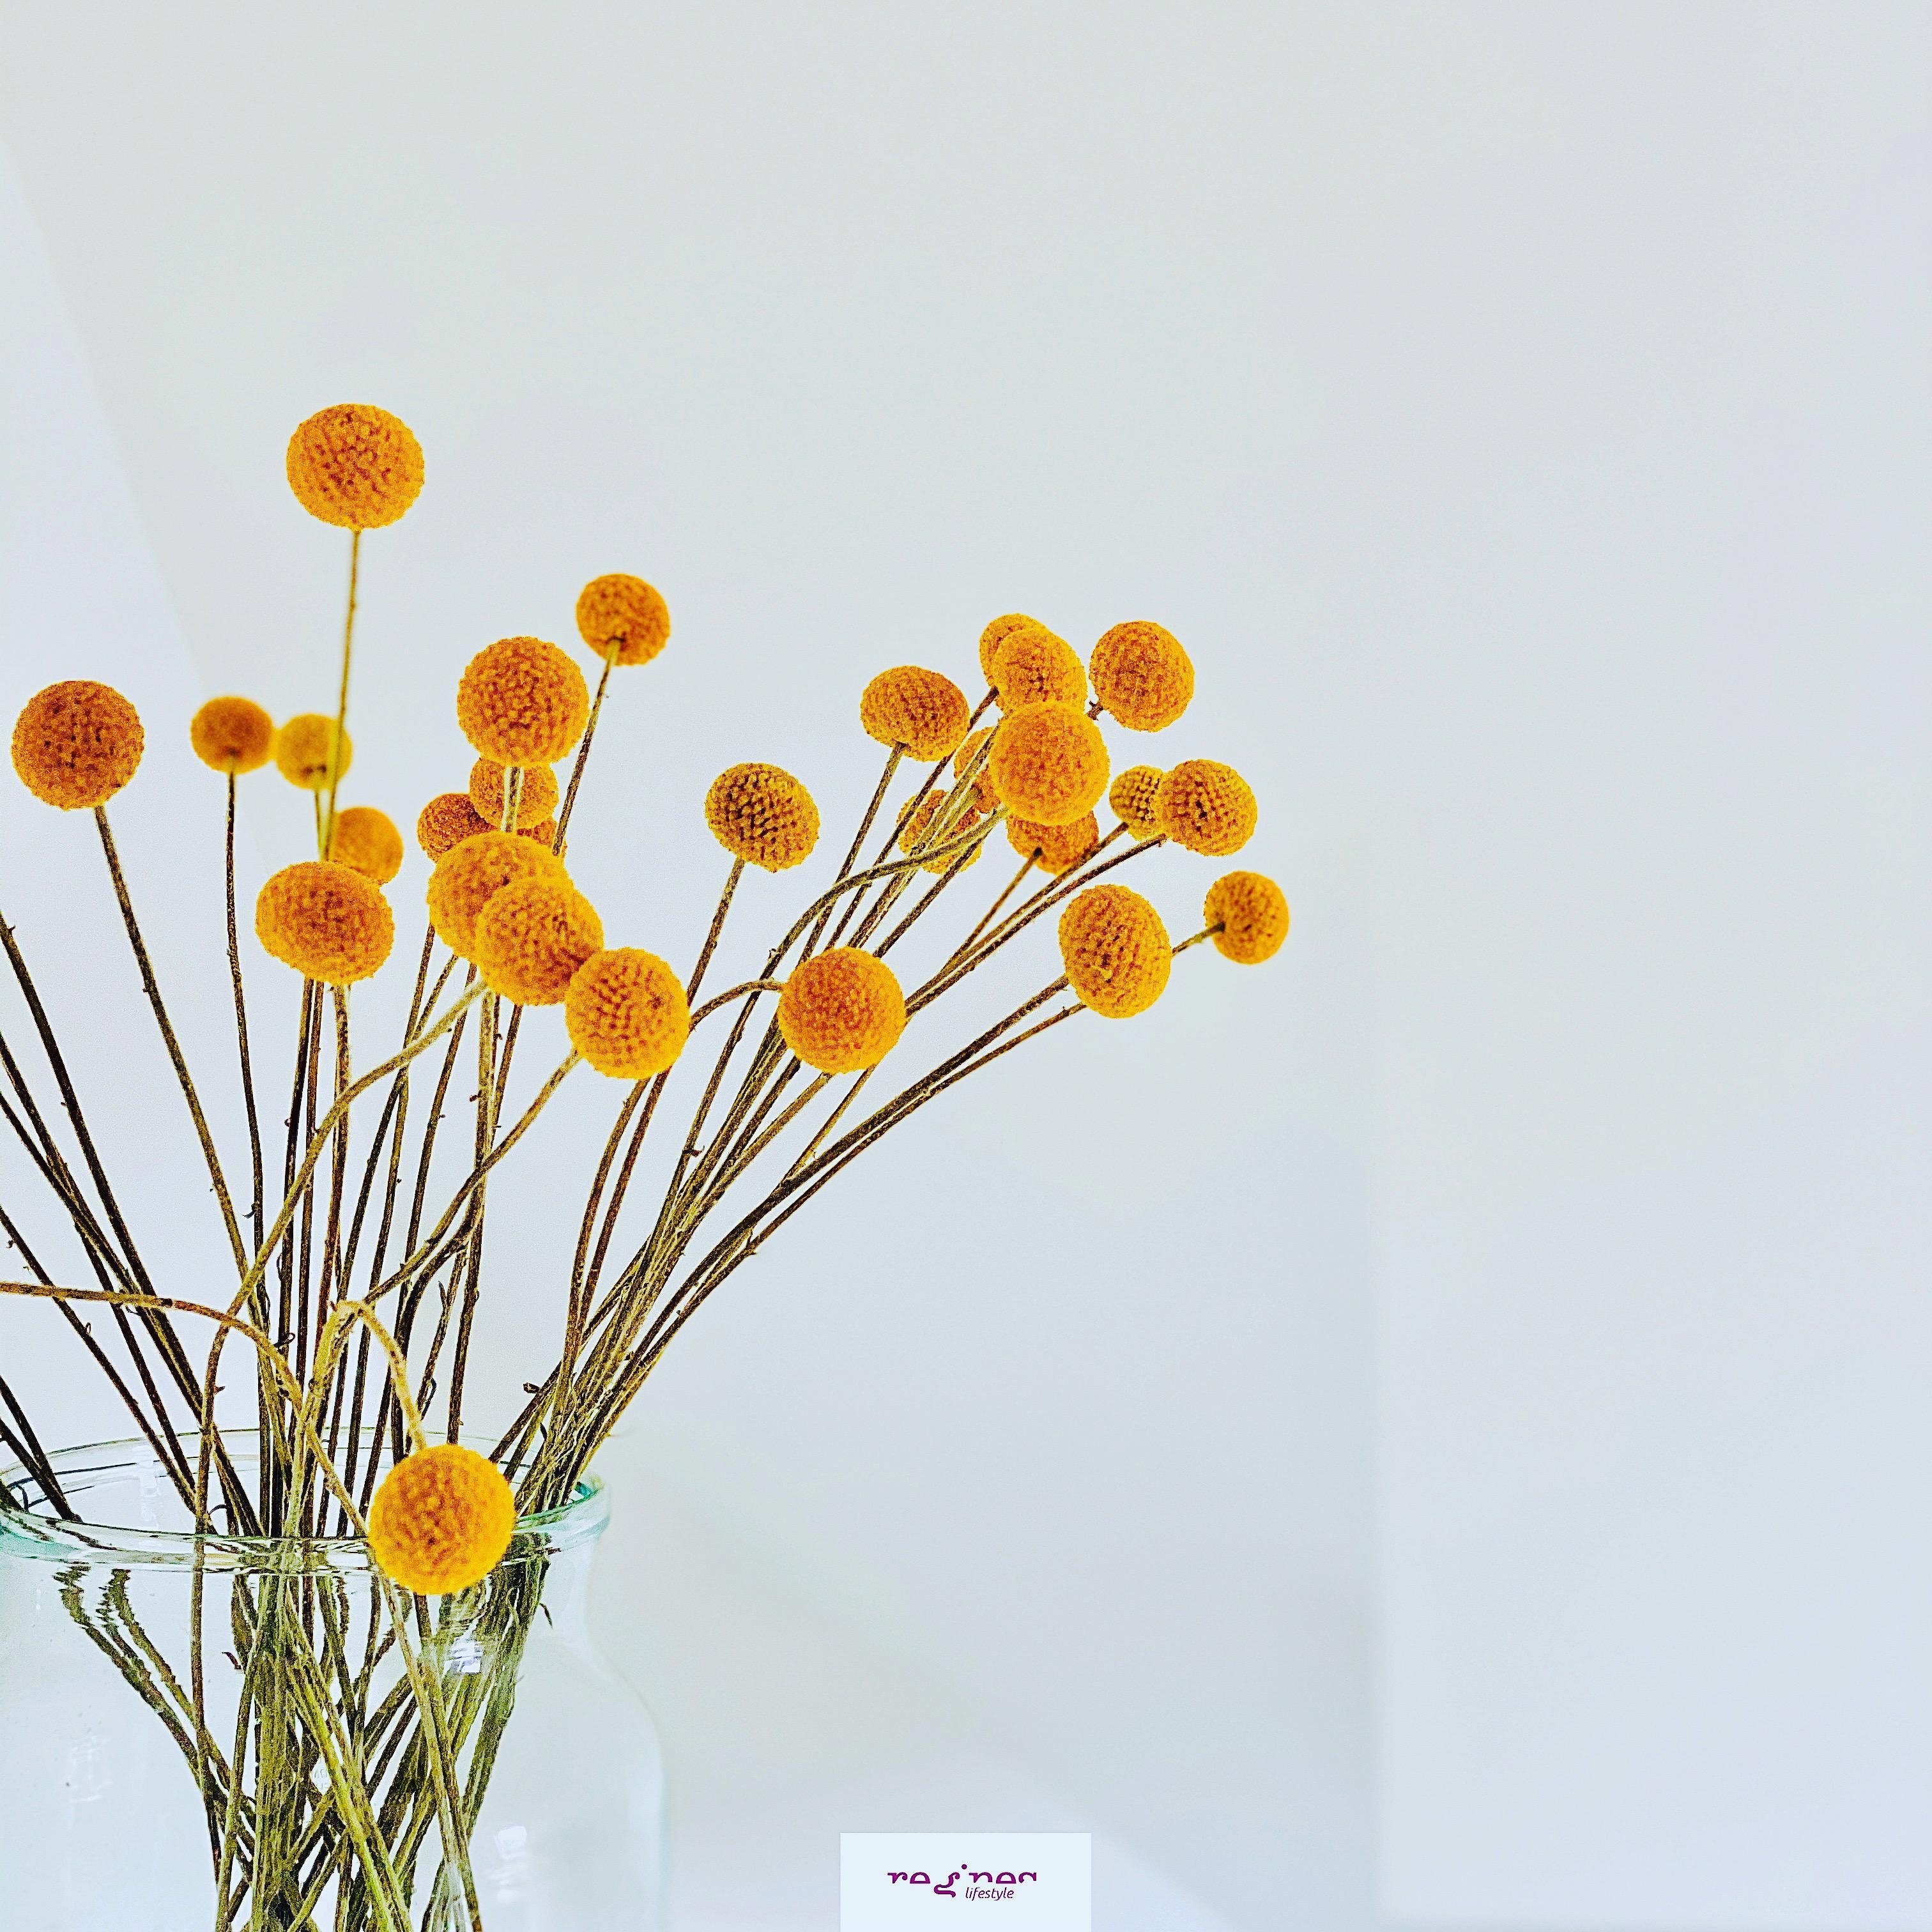 Derzeit im Trommelstöcke-Rausch .. 
#Craspedia #freshflowers #blumen #trommelstöcke #fleur #detailaufnahme #minimalisum